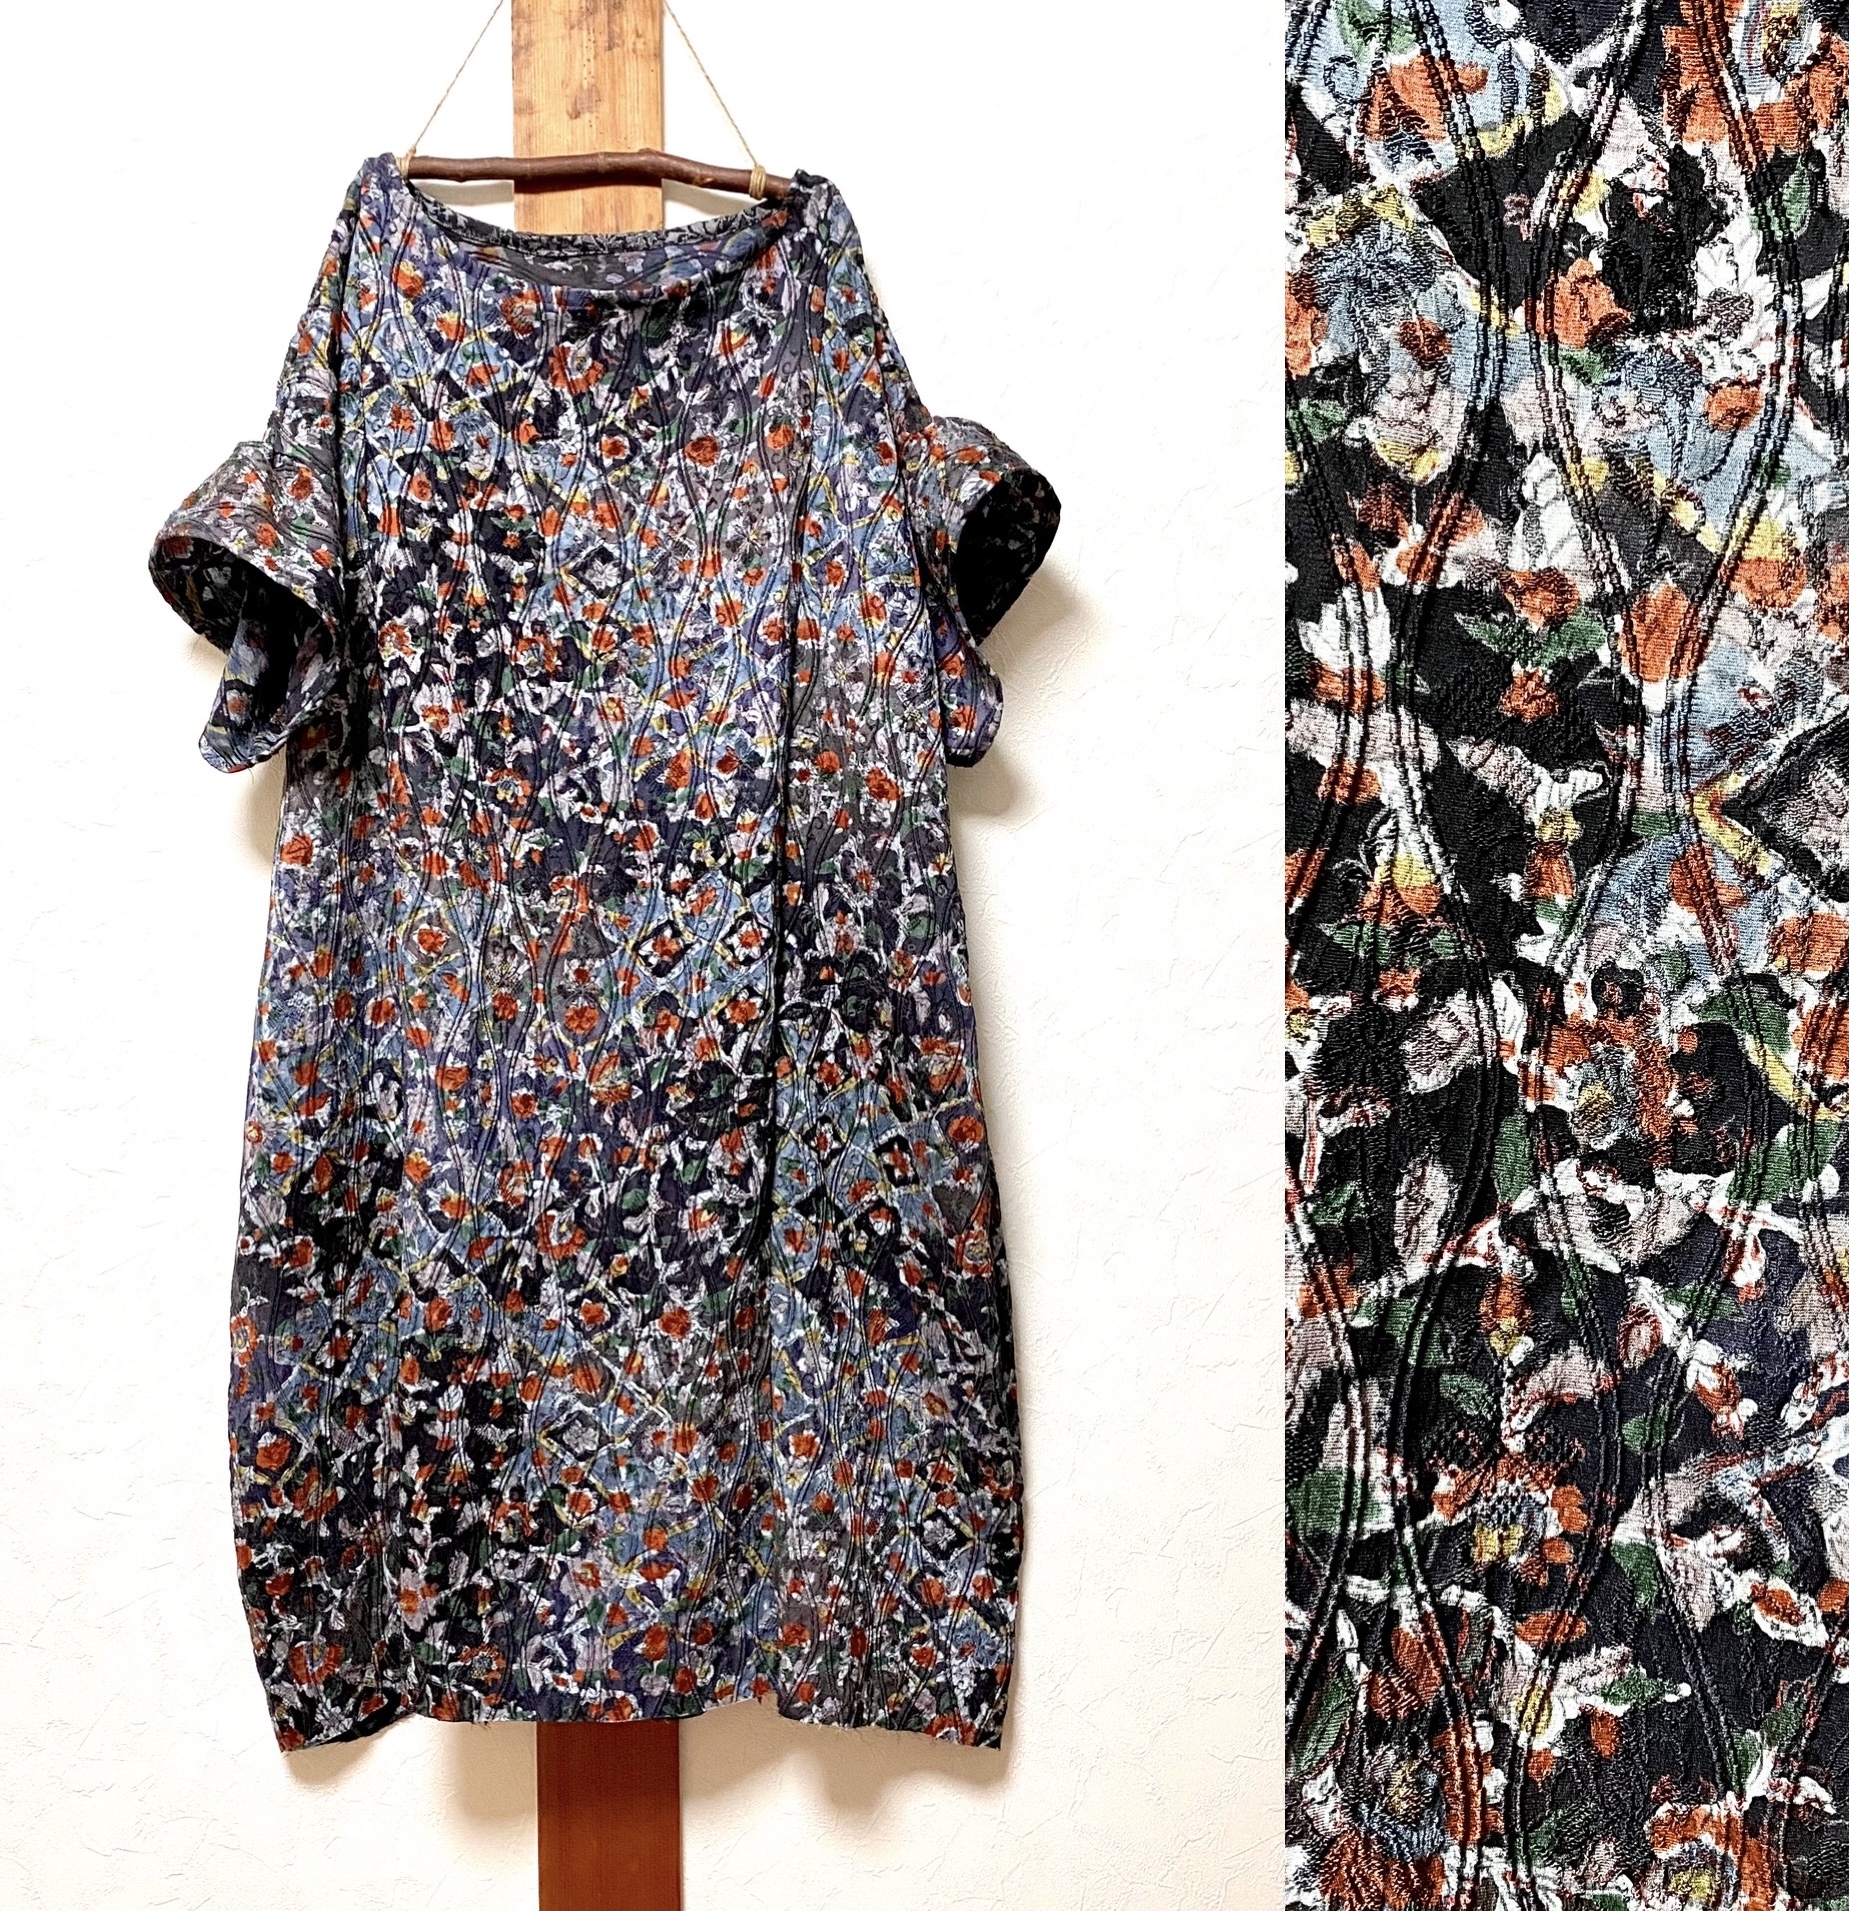 Price Down 正絹 レトロな織りのコクーンワンピース 着物リメイク Iichi ハンドメイド クラフト作品 手仕事品の通販